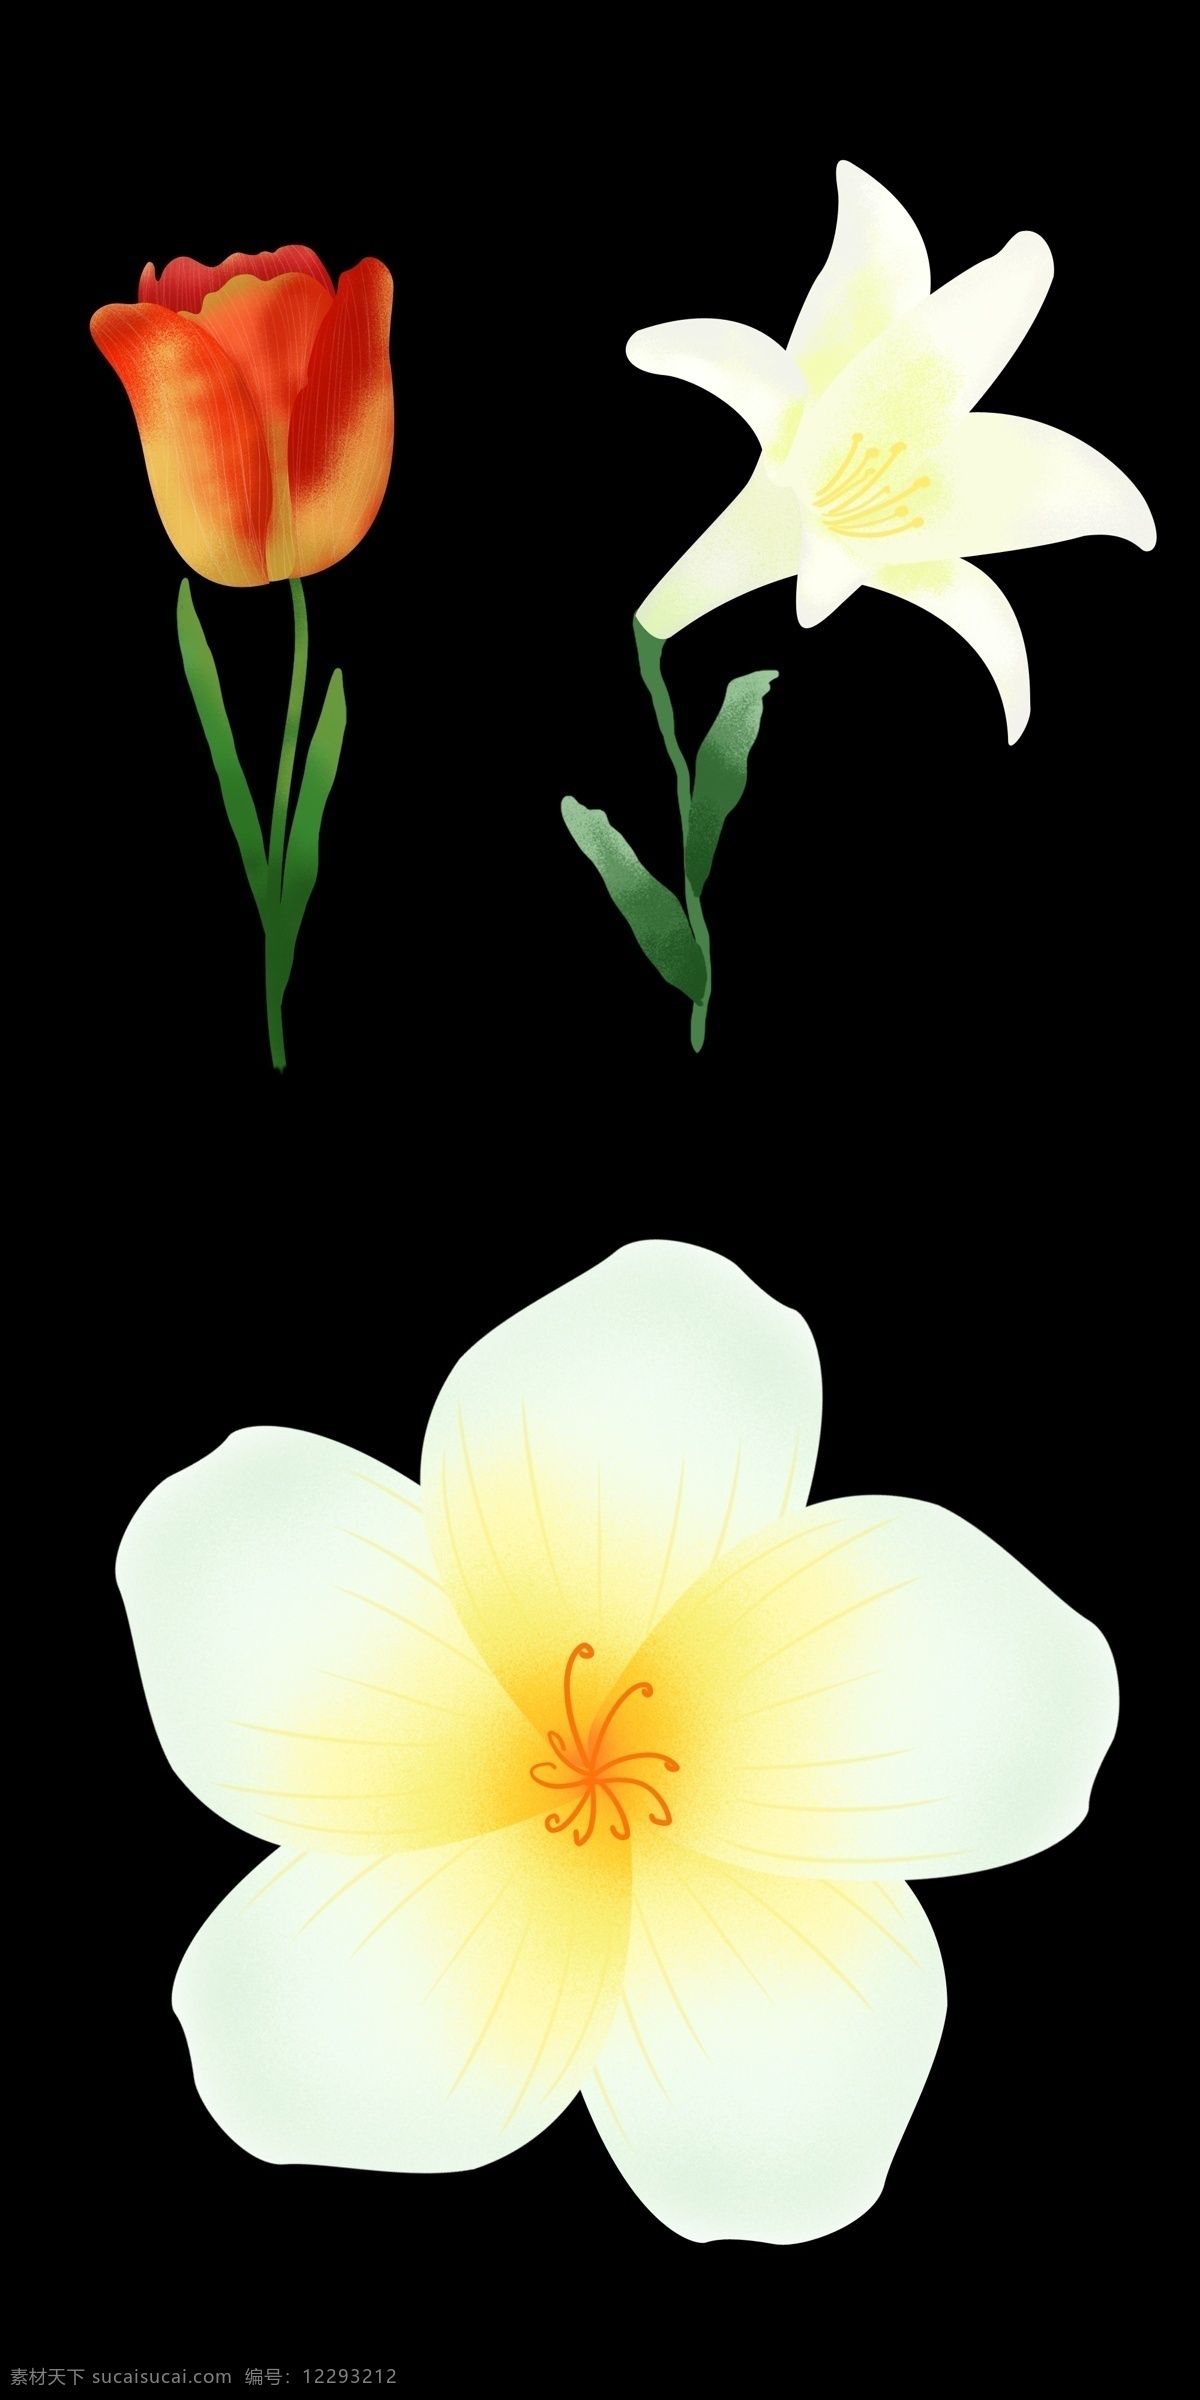 写实 郁金香 百合花 花朵 超级写实 矢量花朵 矢量素材 可爱的花朵 手绘卡通 一朵花 小粉花 小红花 小野花 小花 粉色 红色 鲜花